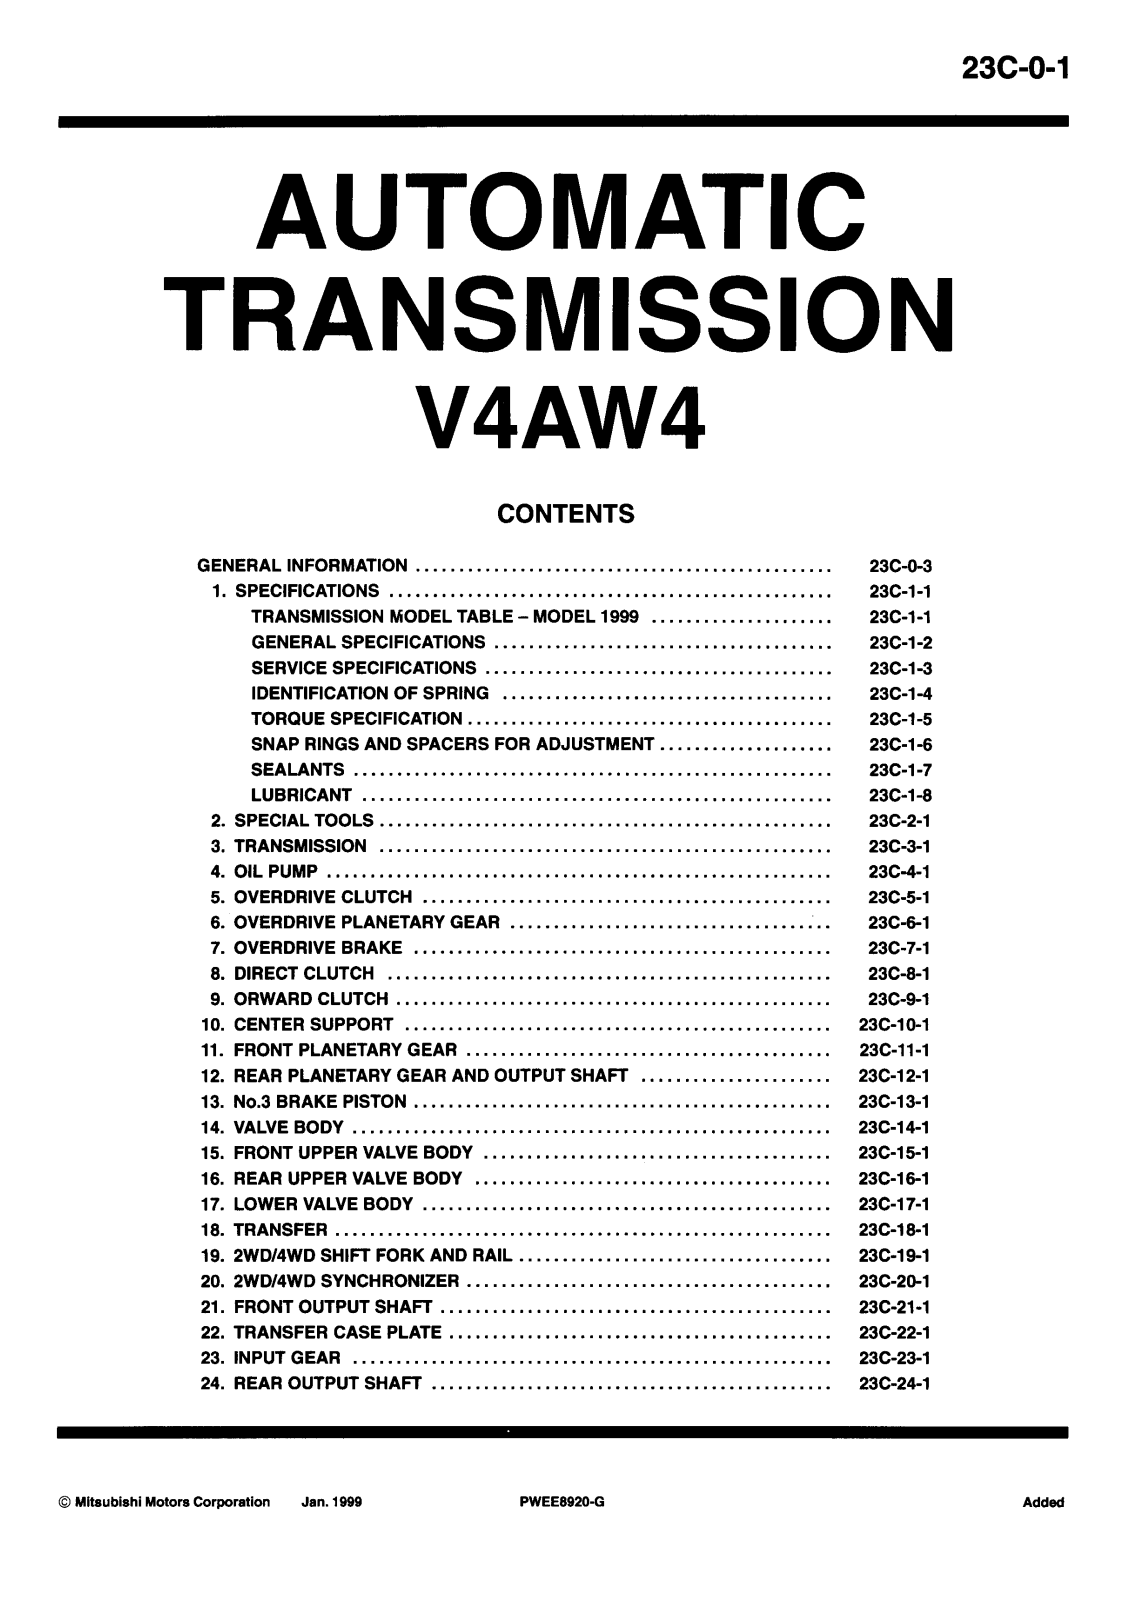 Mitsubishi V4AW4 Service Manual